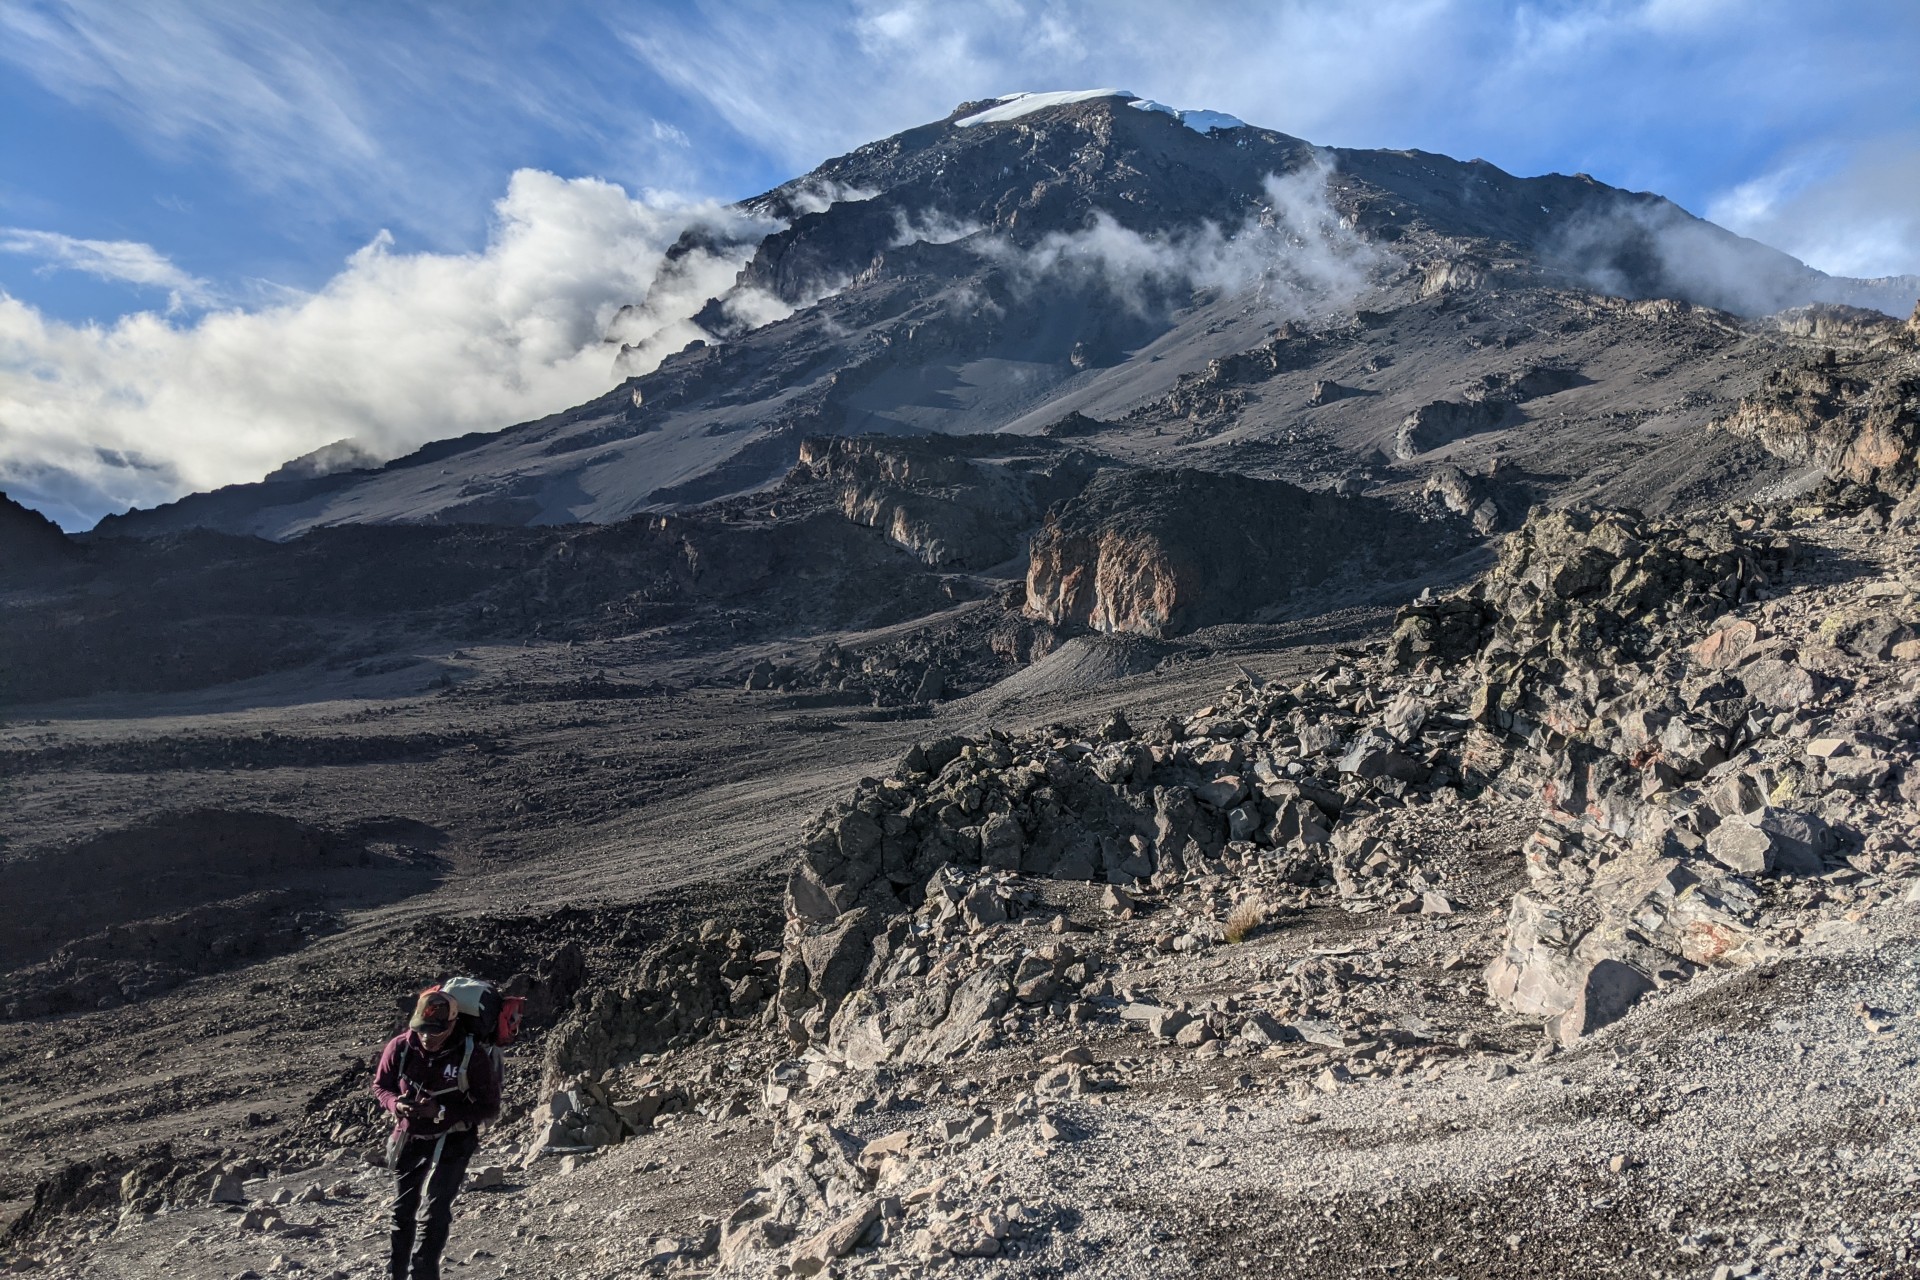 A hiker walking away the rocky landscape of mount Kilimanjaro